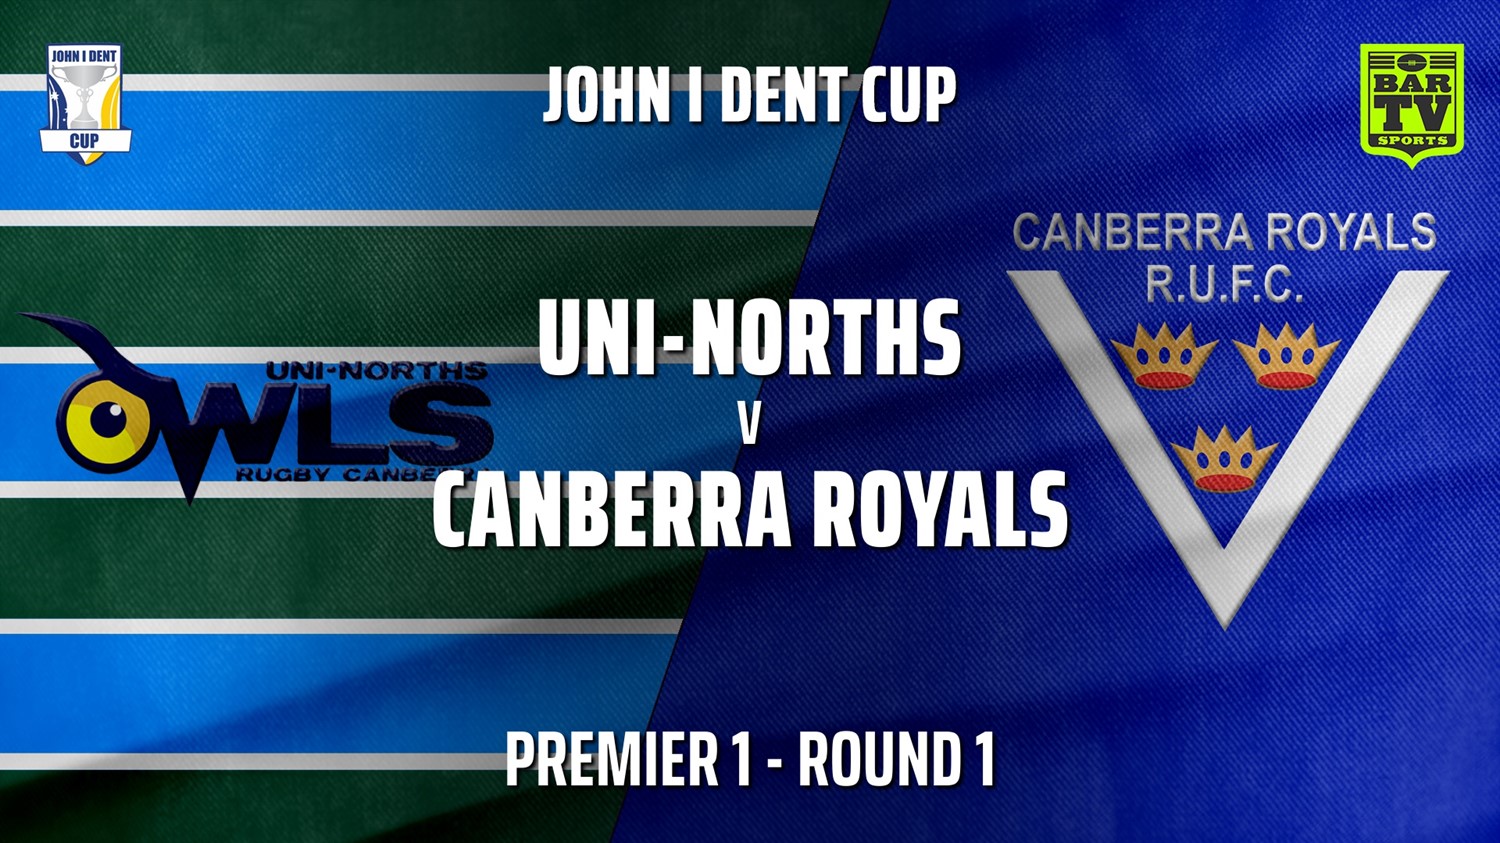 John I Dent Round 1 - Premier 1 - UNI-Norths v Canberra Royals Minigame Slate Image